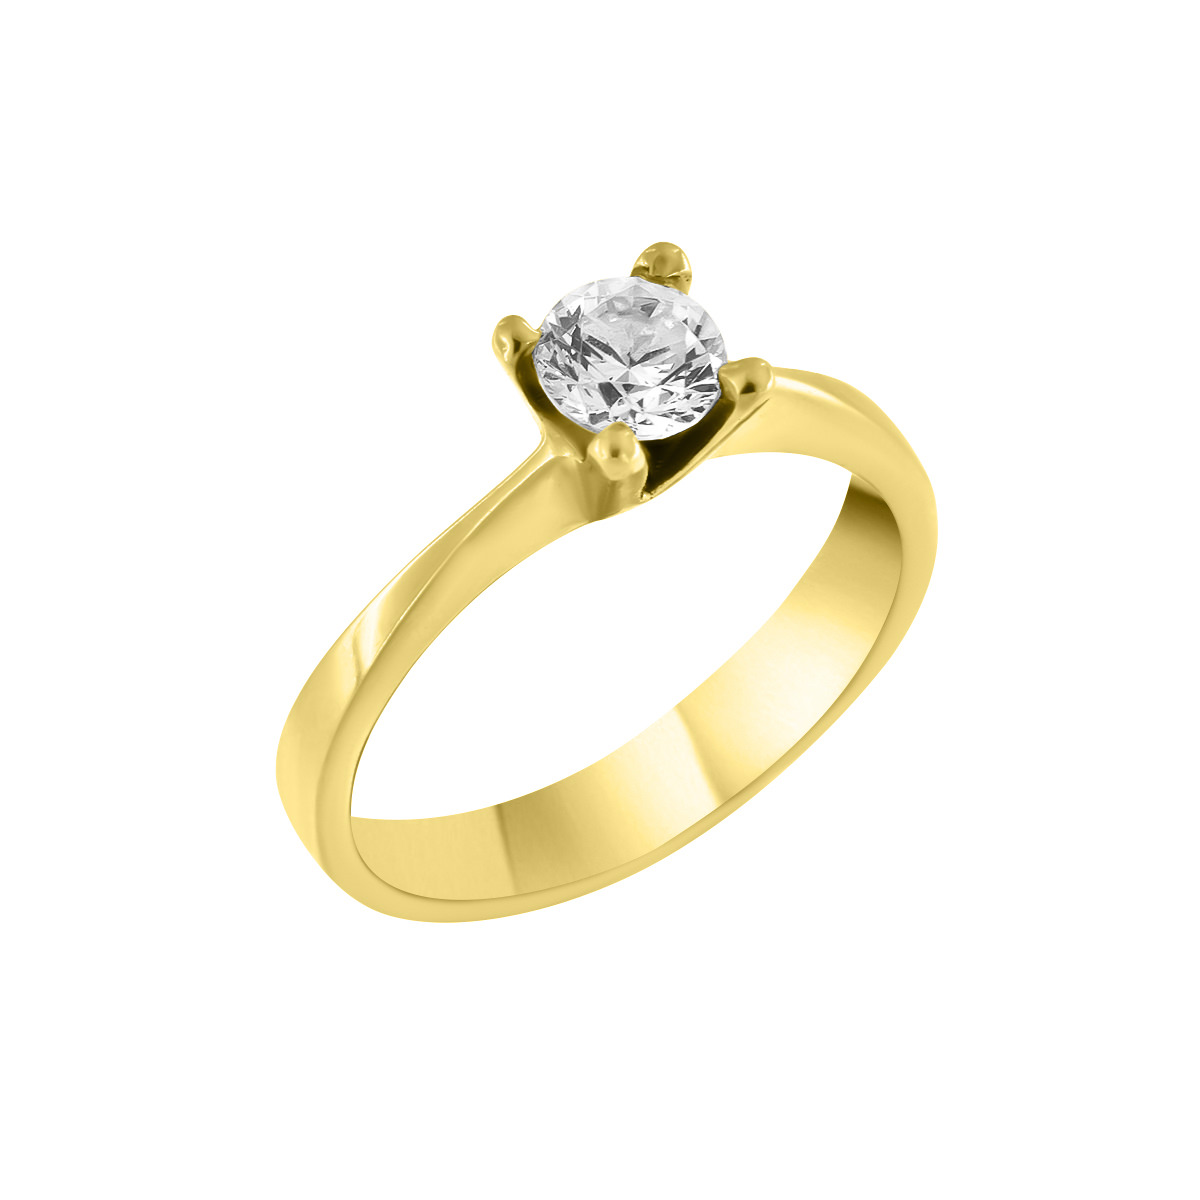 WEDDING: Women's Ring 14 Carat Gold